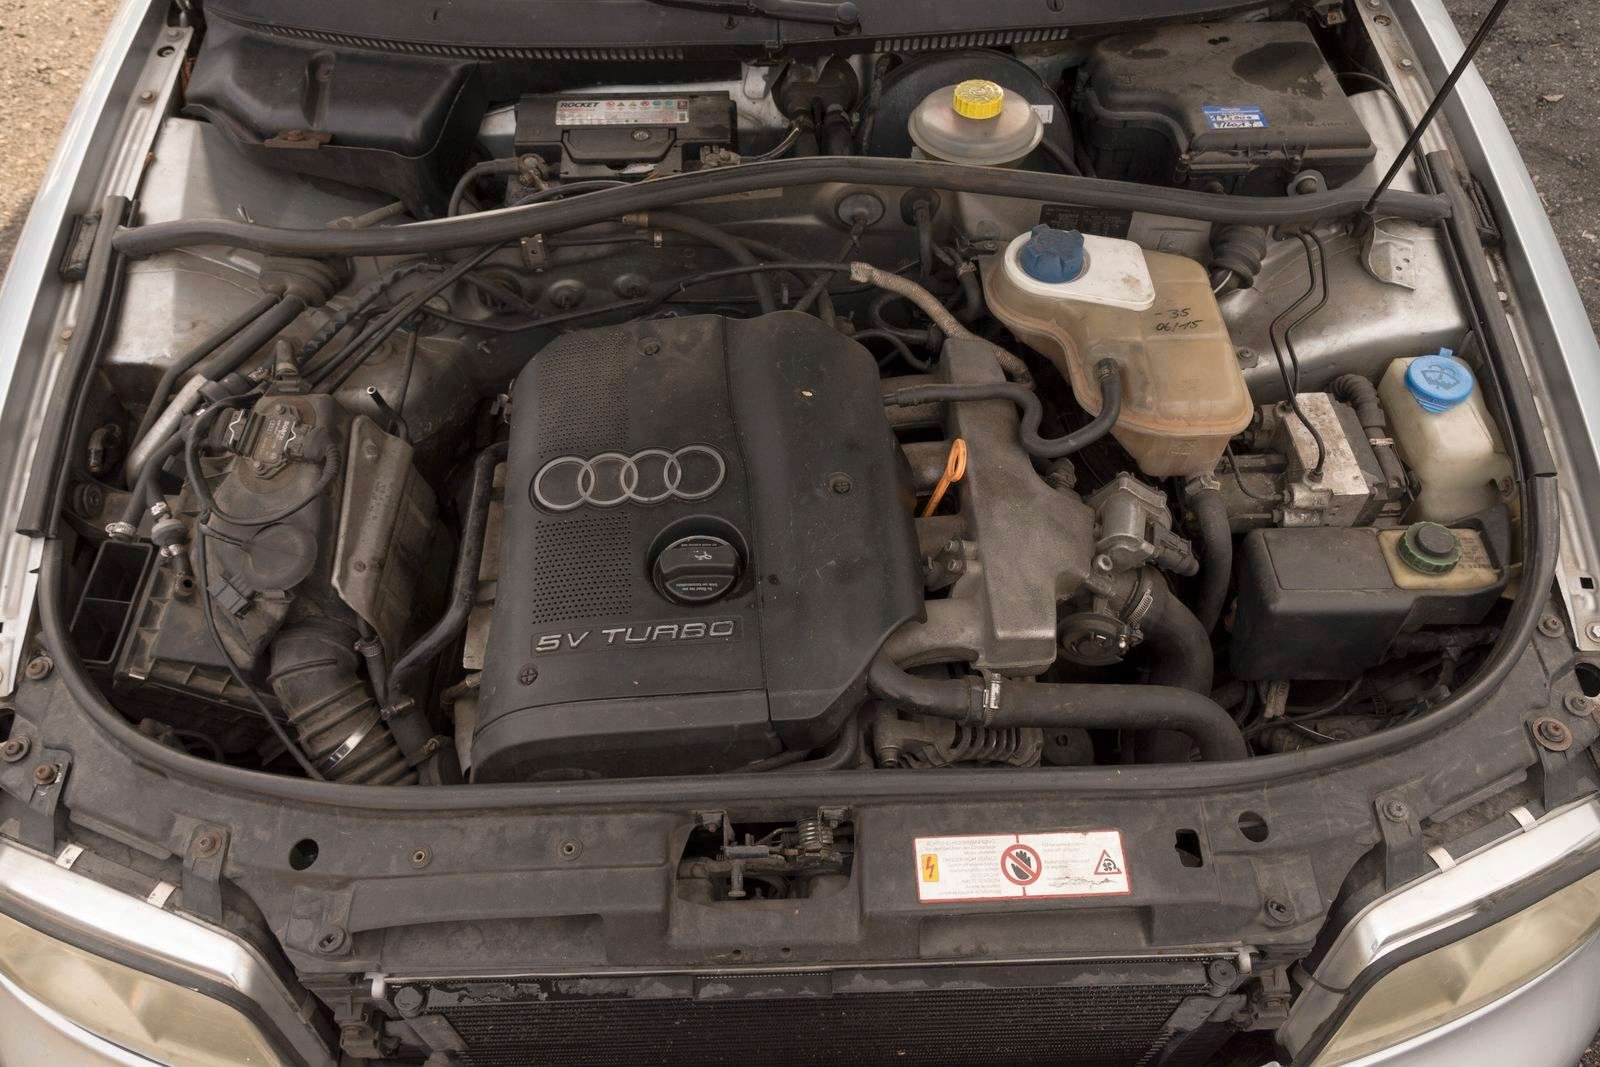 Купить двигатели для Audi A4 B5 [рестайлинг] | ОптМоторов